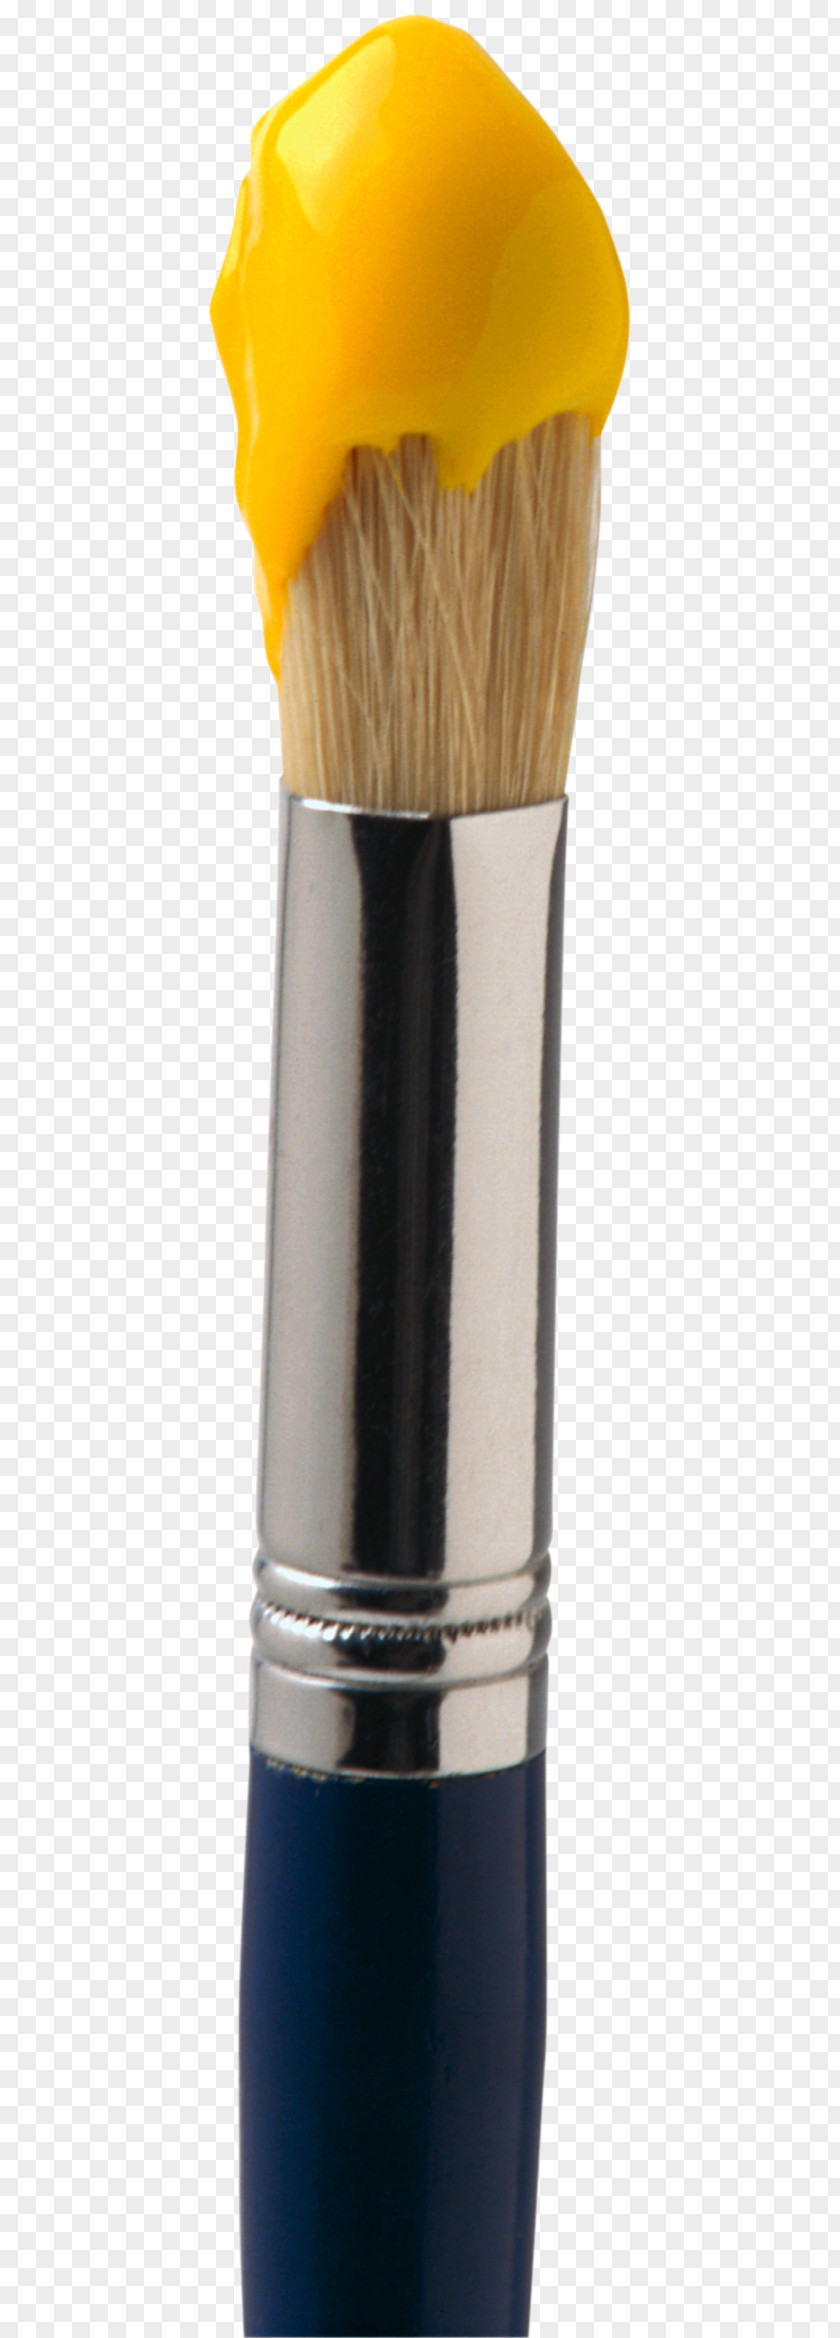 Painbrush Paintbrush Palette Clip Art PNG